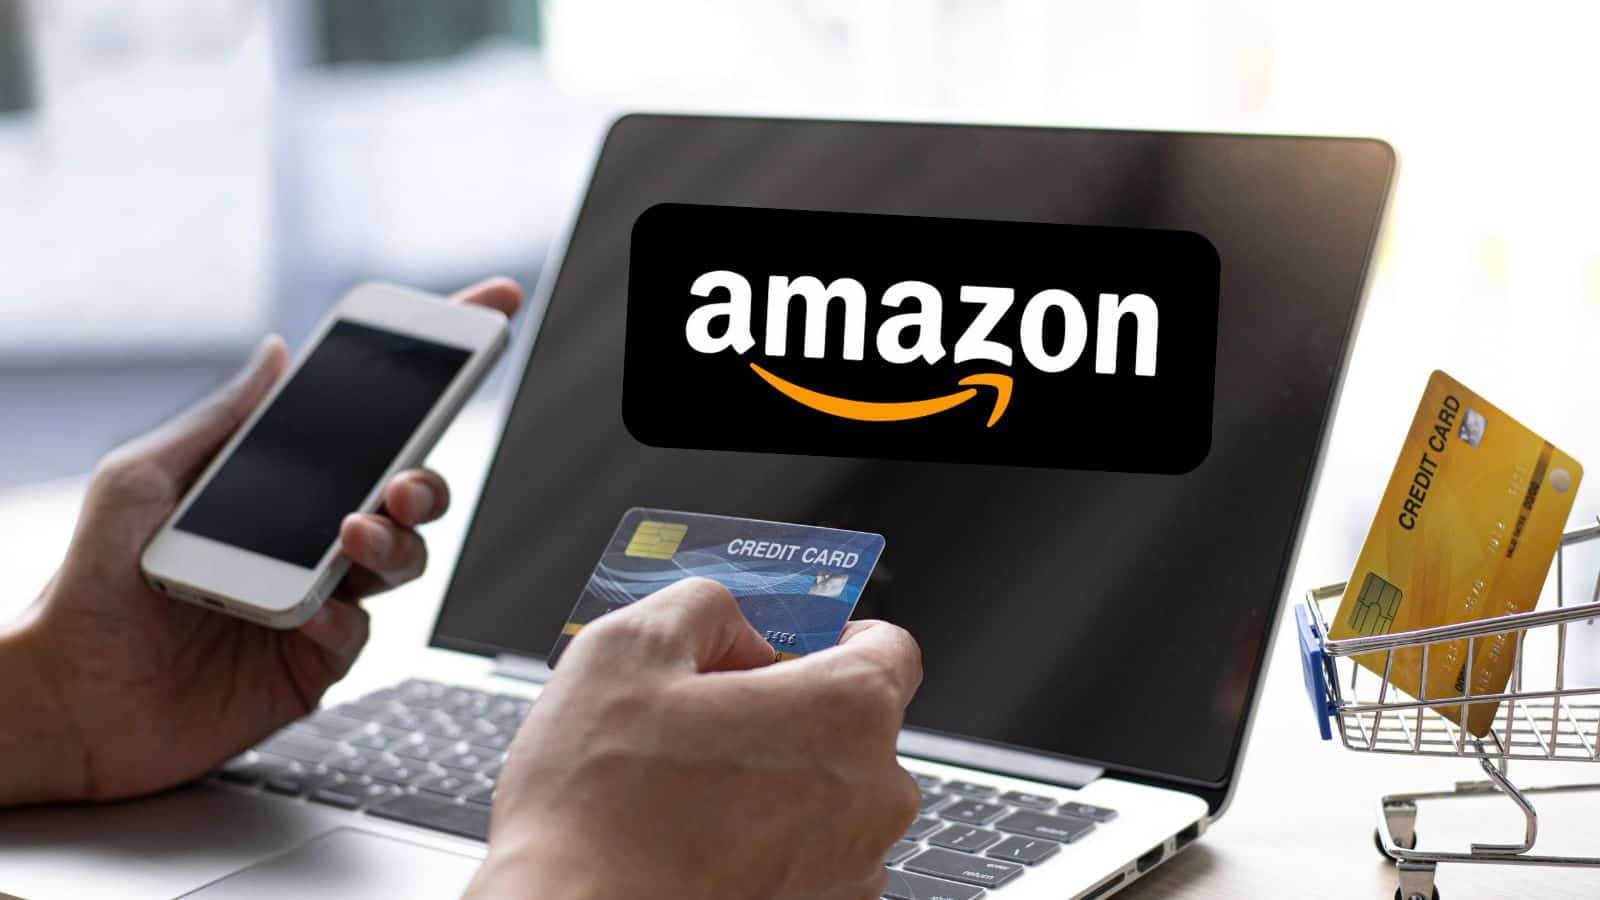 Amazon è FOLLE: offerte shock al 90% valide solo oggi